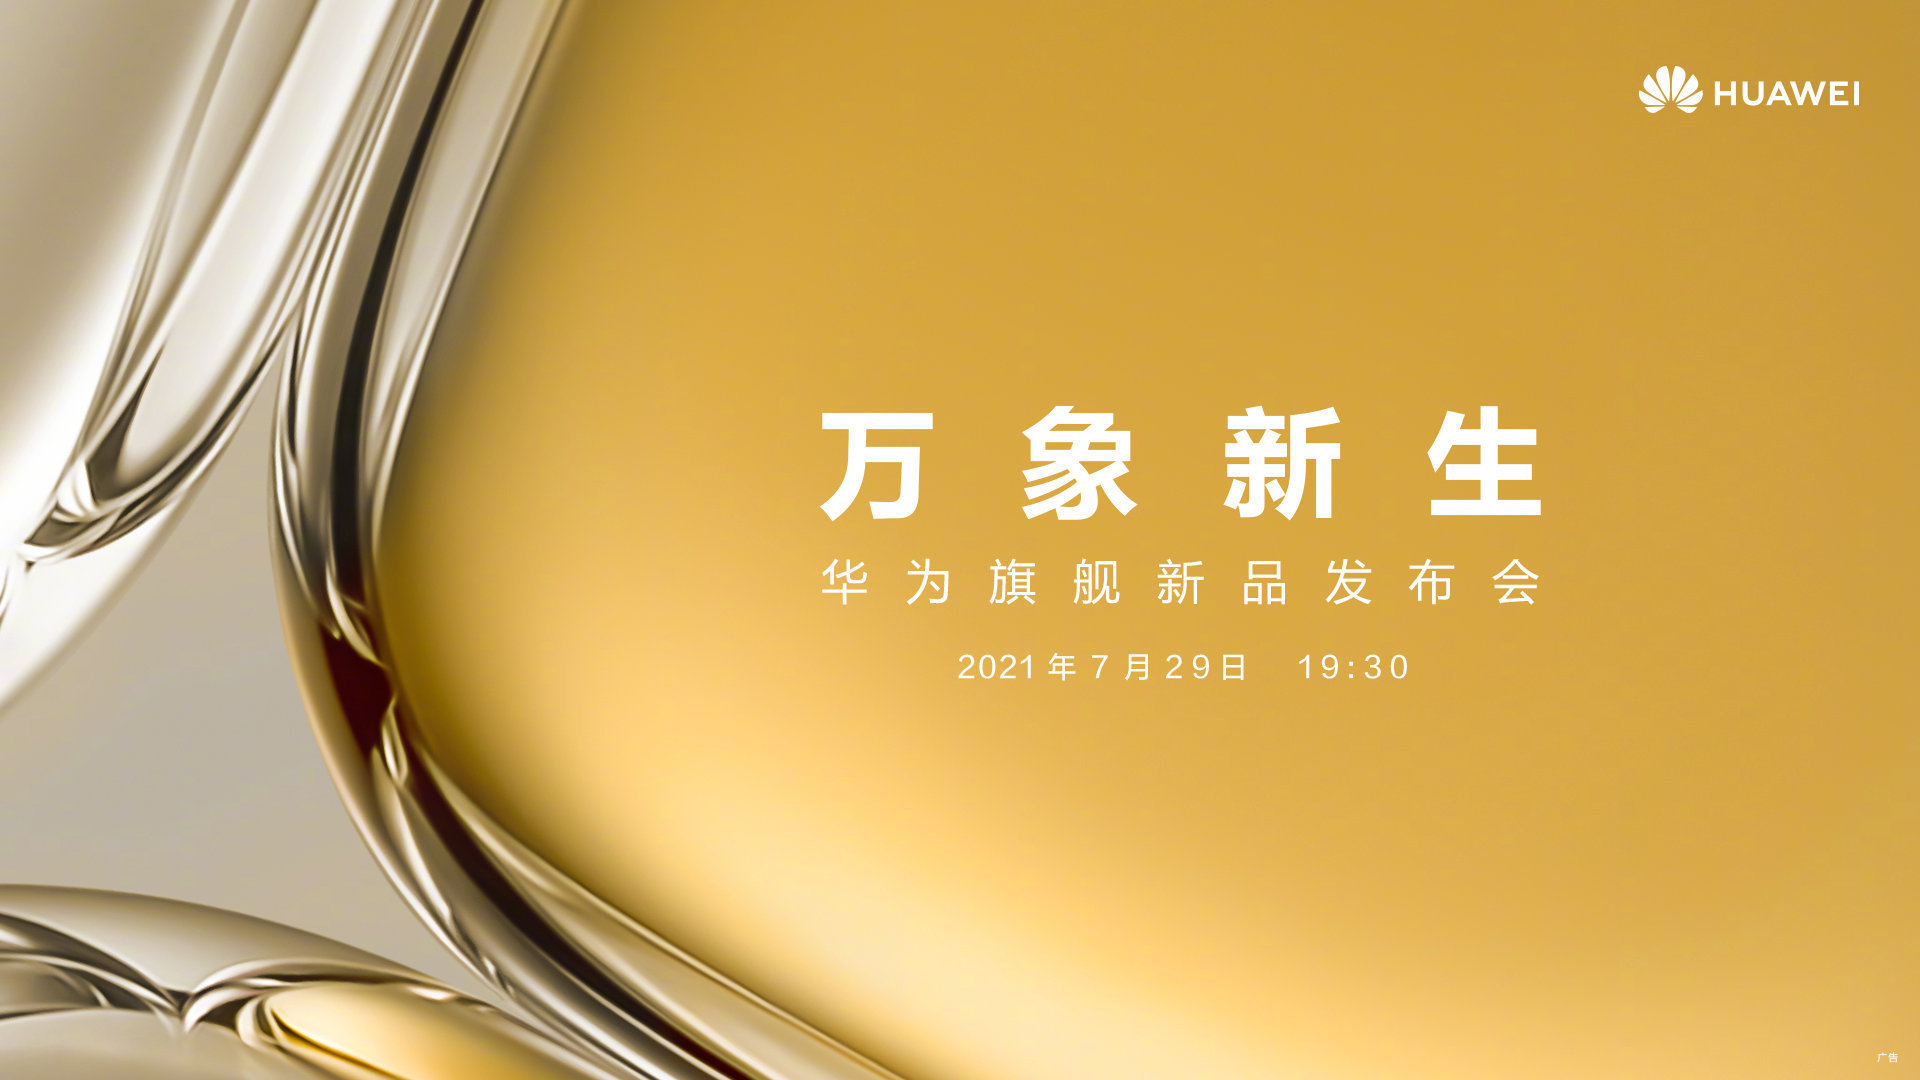 新一代影像天花板 华为官宣7月29日将发布华为P50系列产品1.jpg